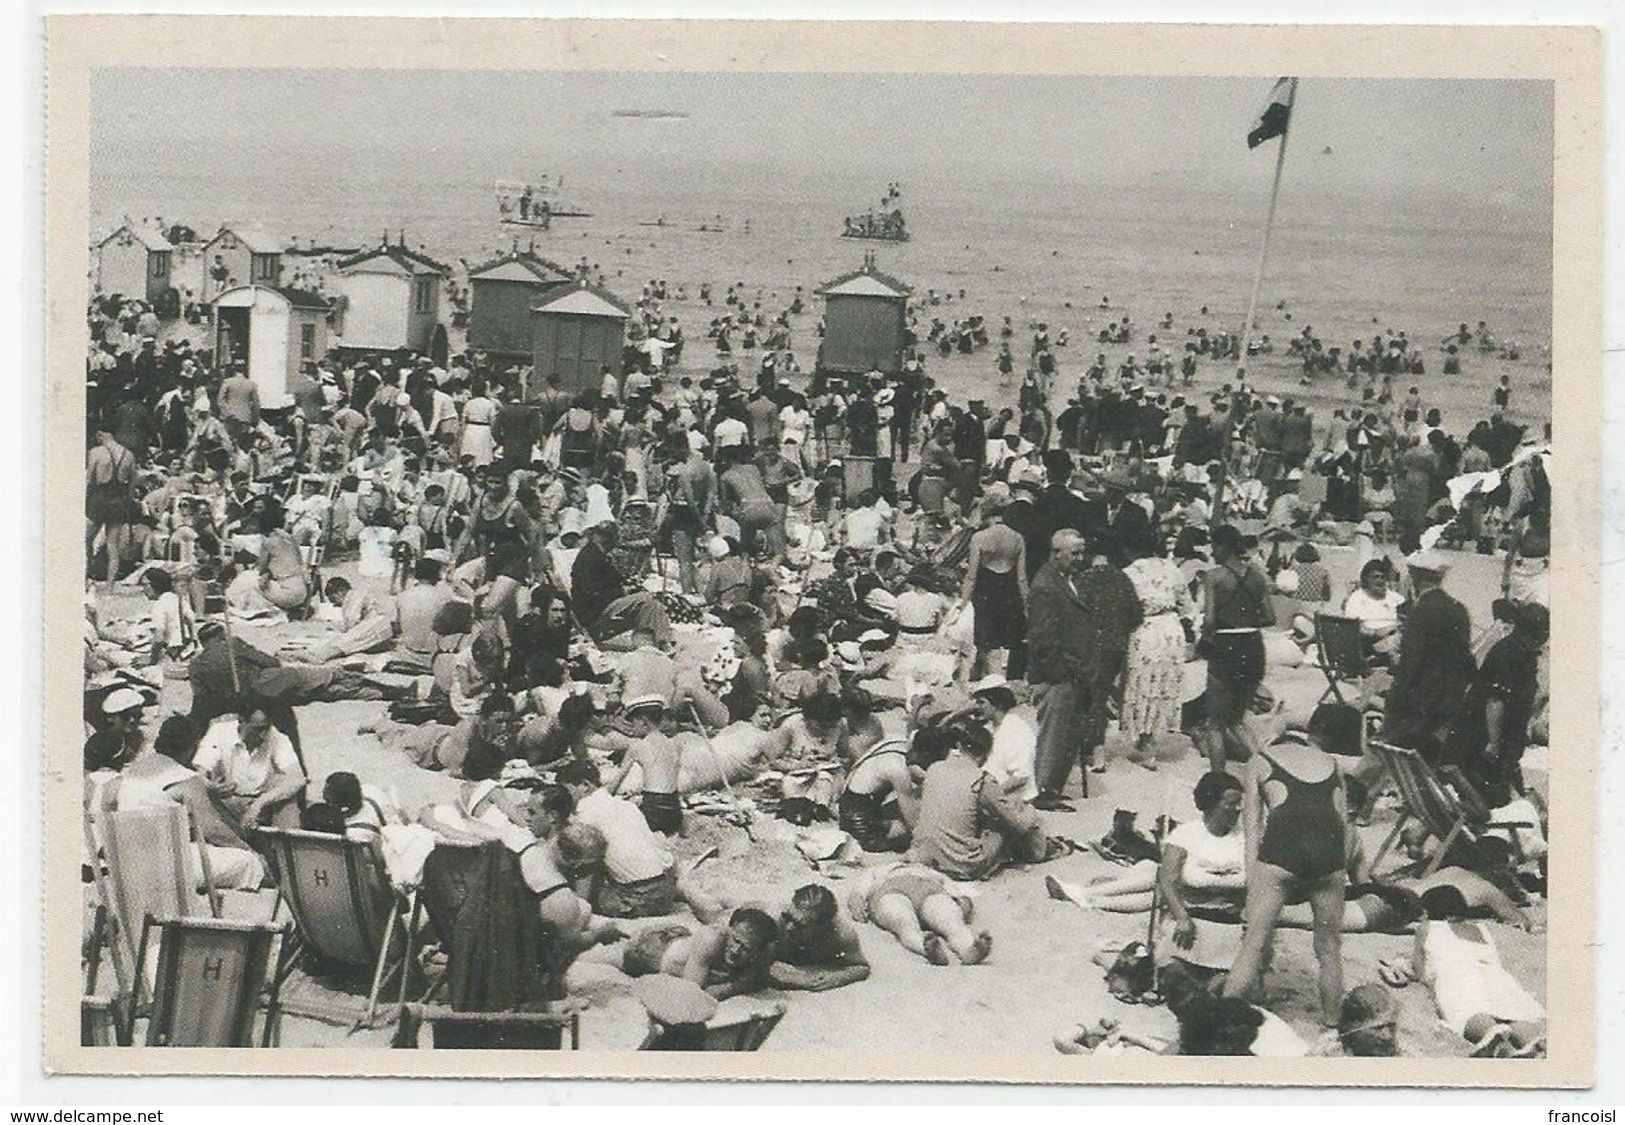 Touristes Sur La Plage. Les Premiers Congés Payés En 1936. Reprodution D'une Photographie De 1936. - Histoire